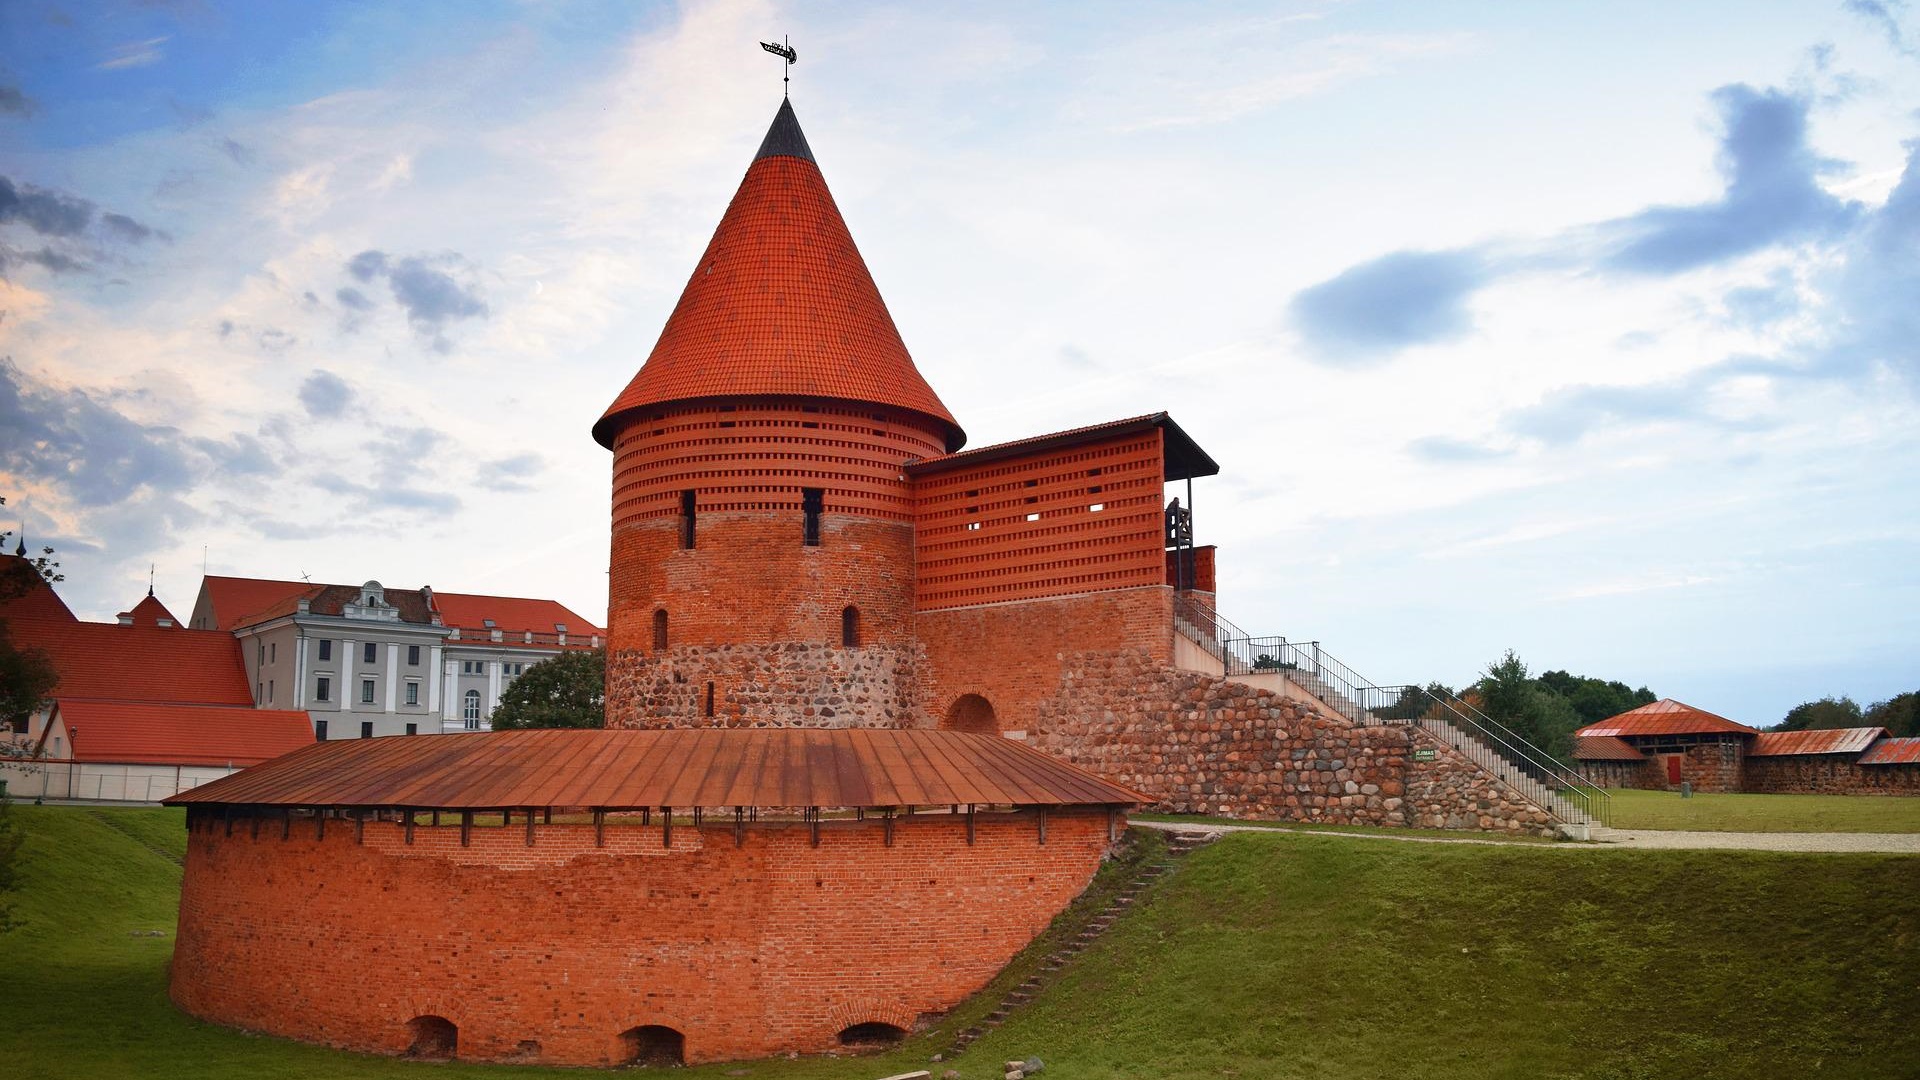 Zamek w Kownie, źródło:pixabay.com/Mimzy